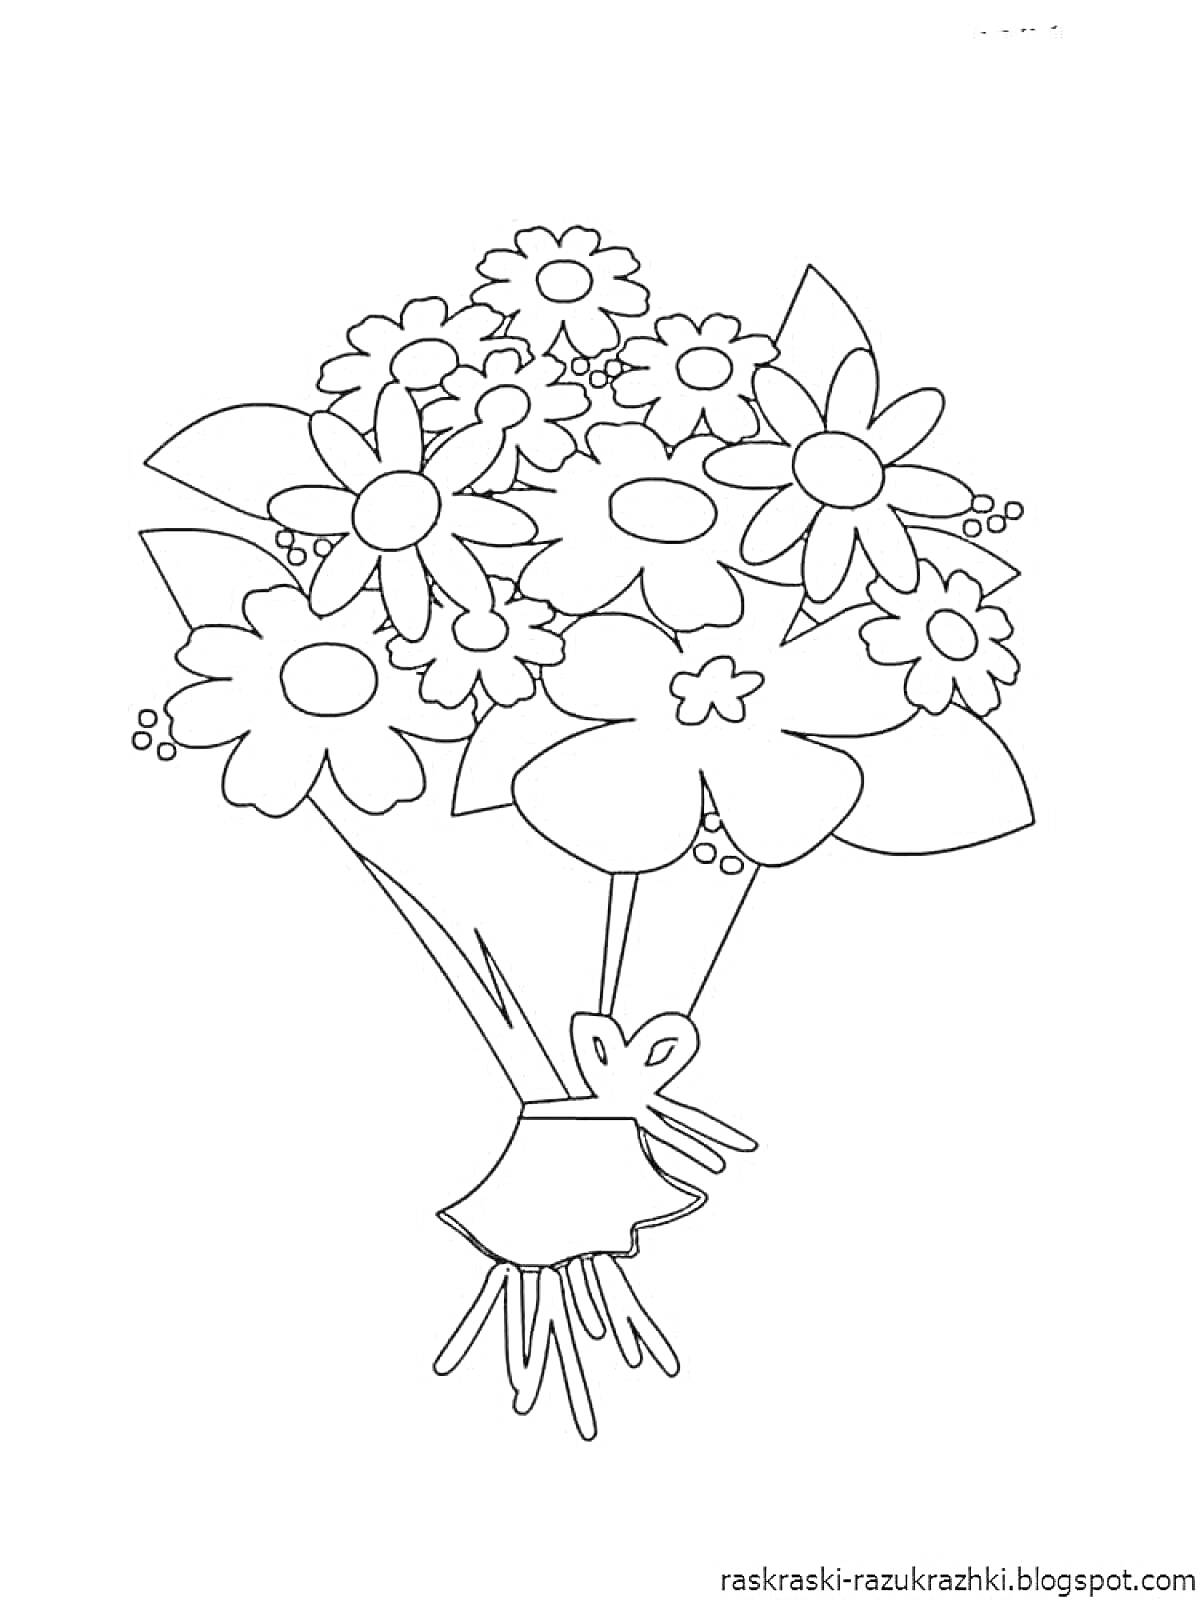 Букет с большими и маленькими цветами, перевязанный лентой